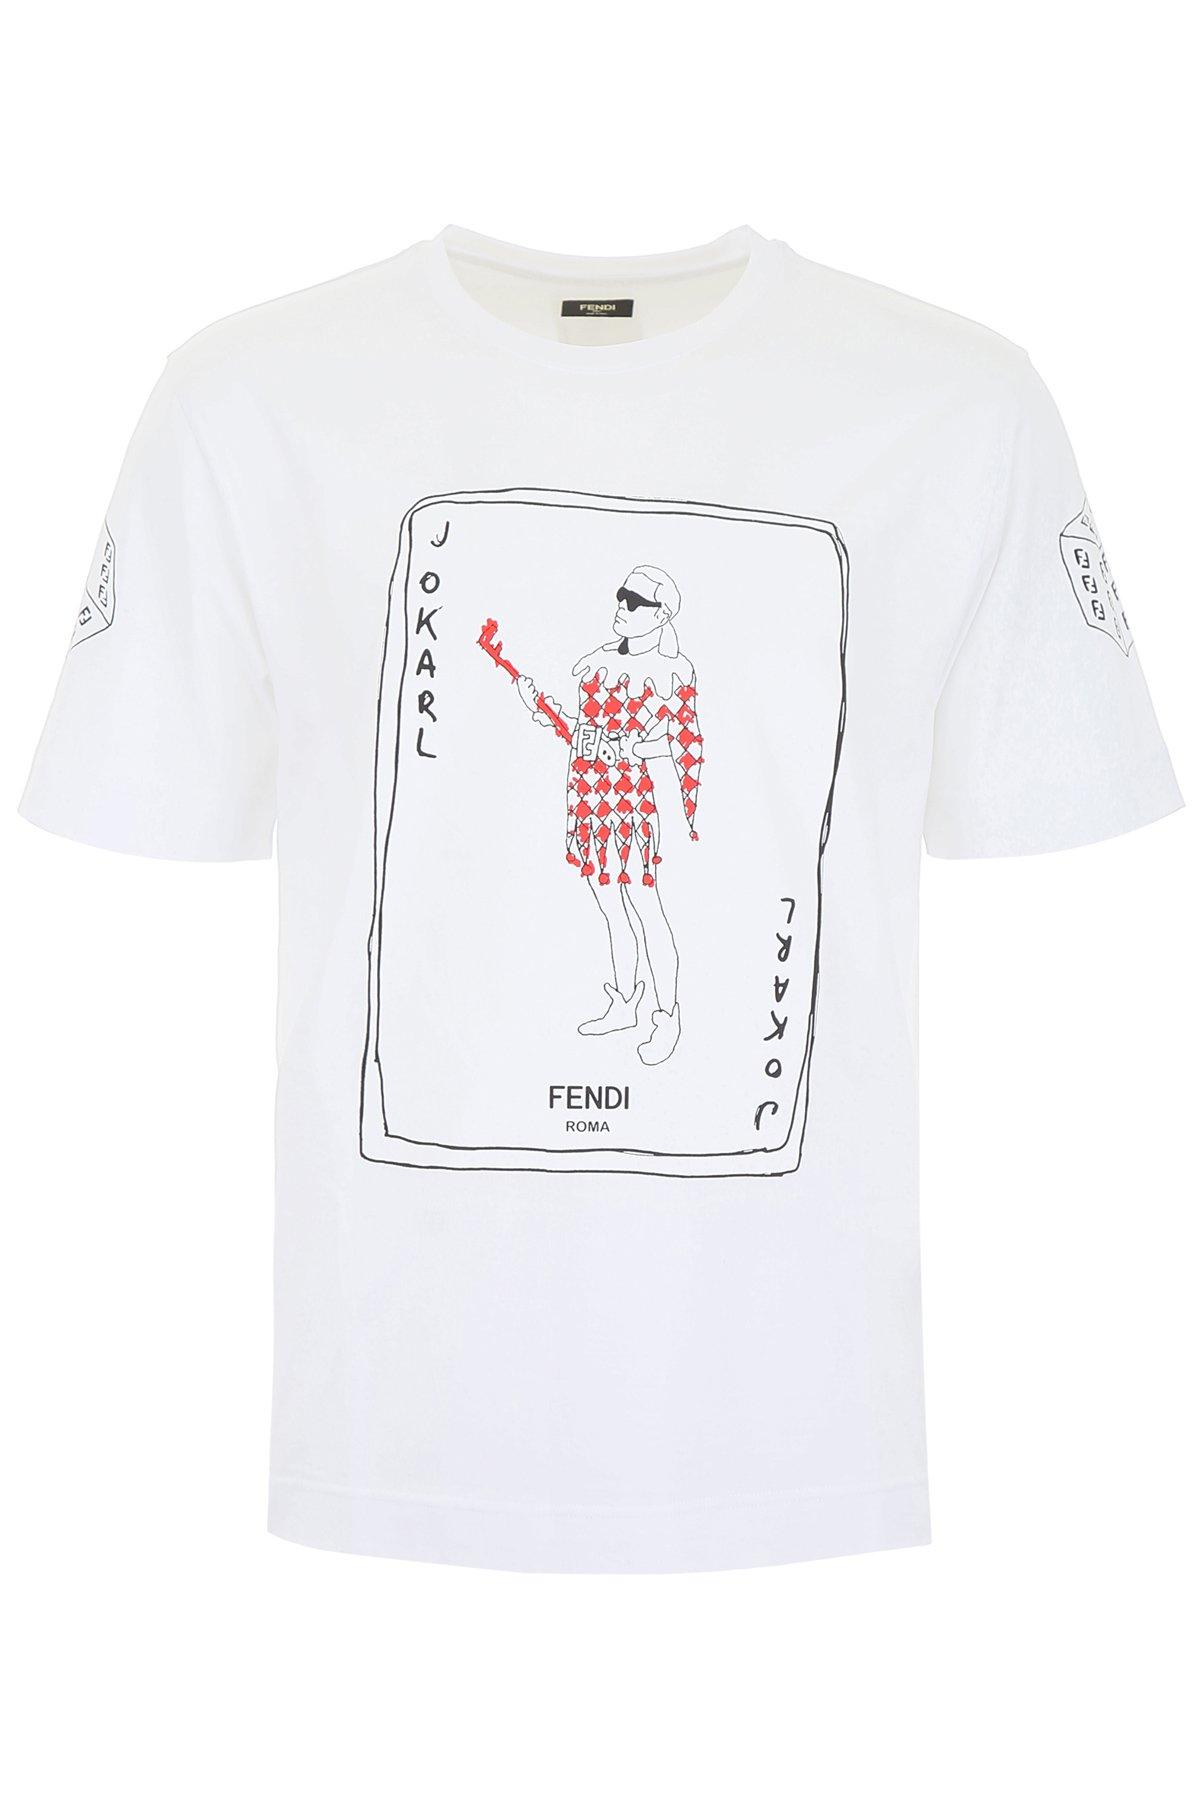 Fendi Joker Shirt Hot Sale, 45% OFF | www.adplus.ee